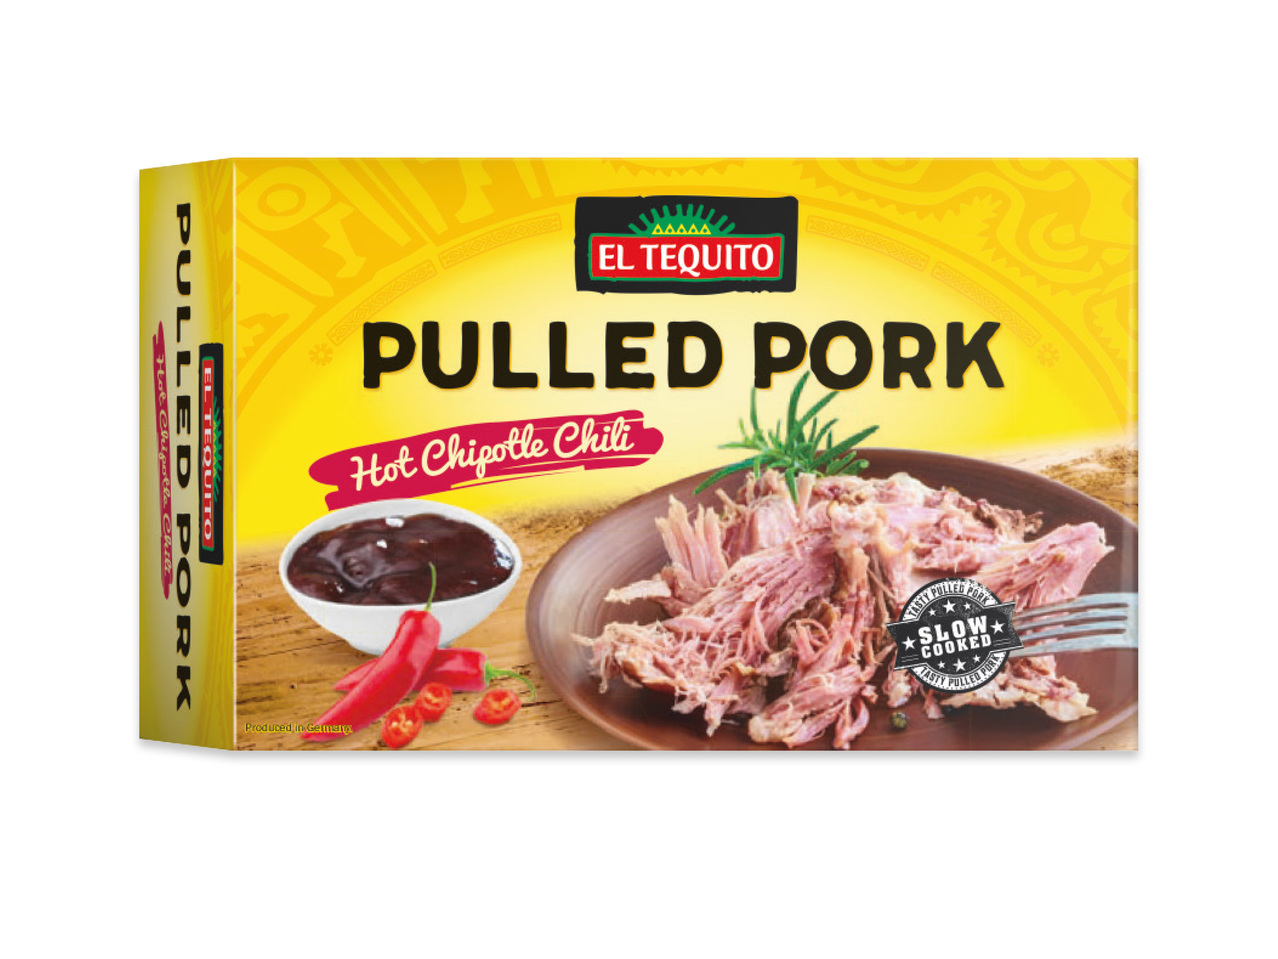 Pulled pork med chipotle